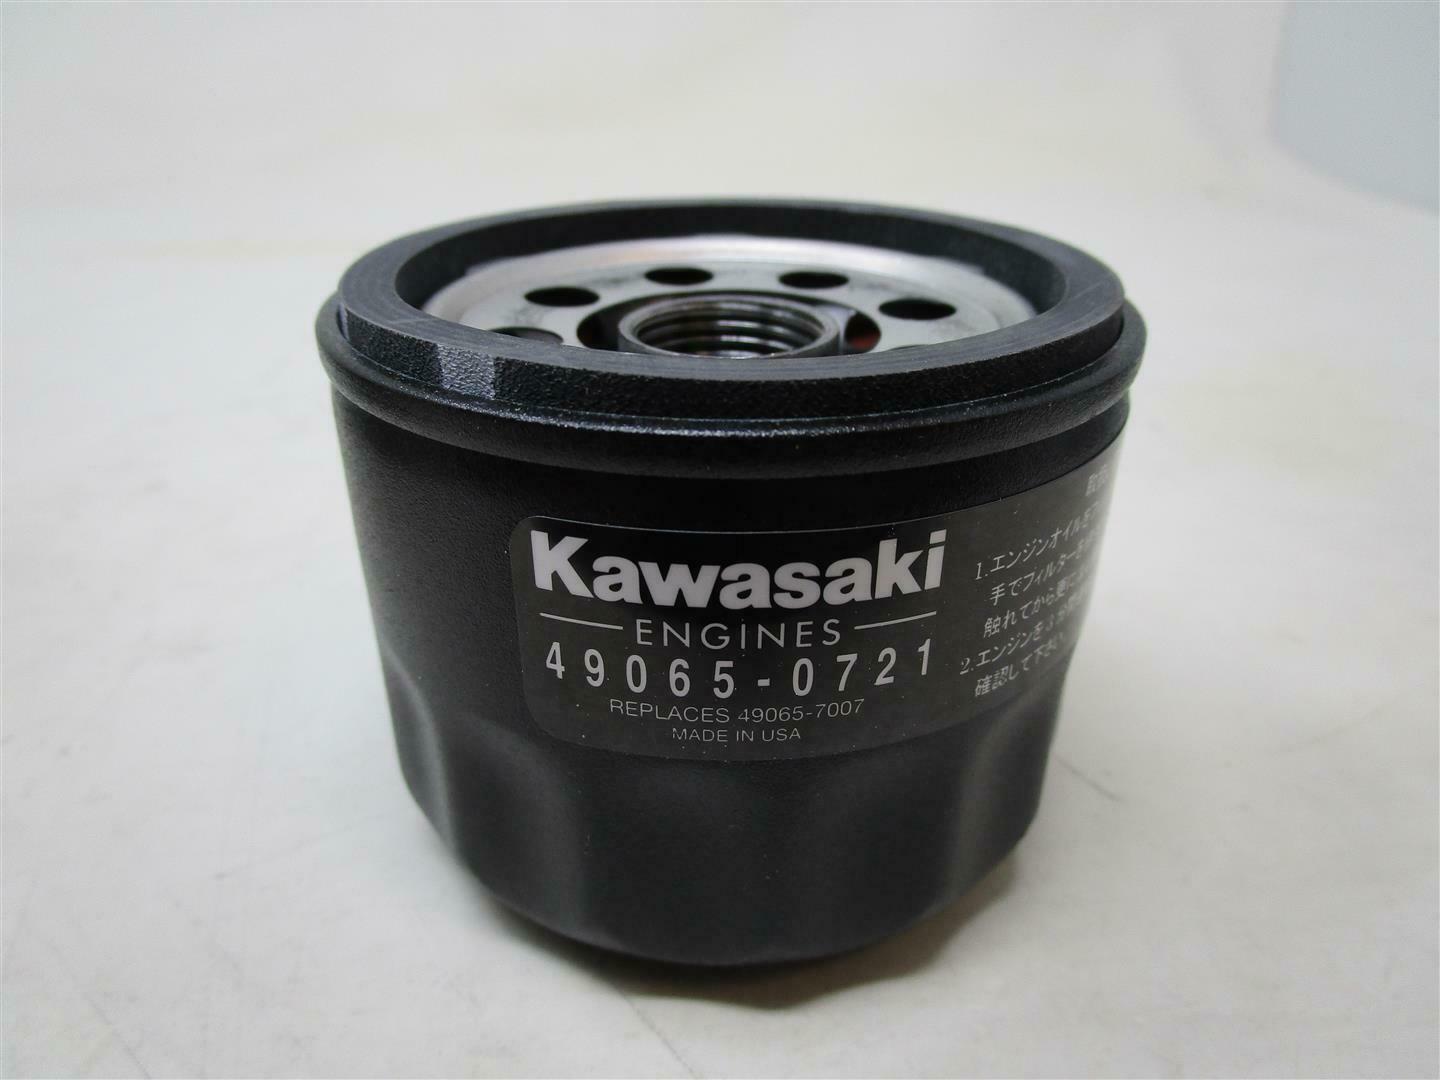 GENUINE OEM KAWASAKI 49065-0721 OIL FILTER; REPLACES 49065-7007